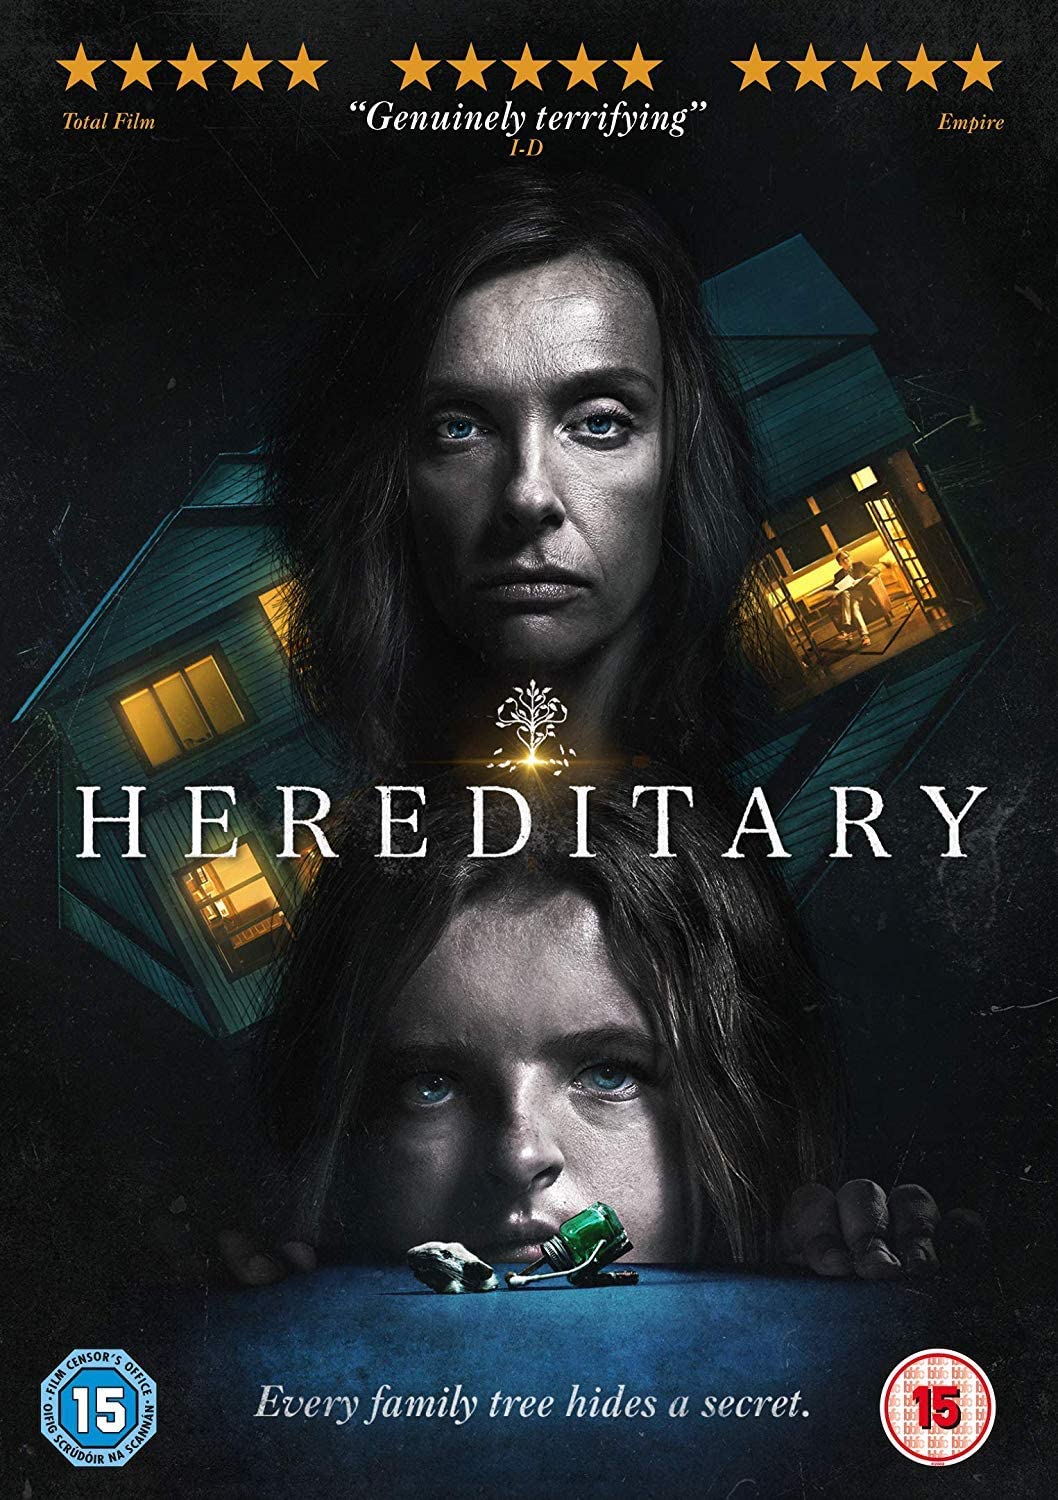 Hereditary [2018] - Horror/Drama [DVD]